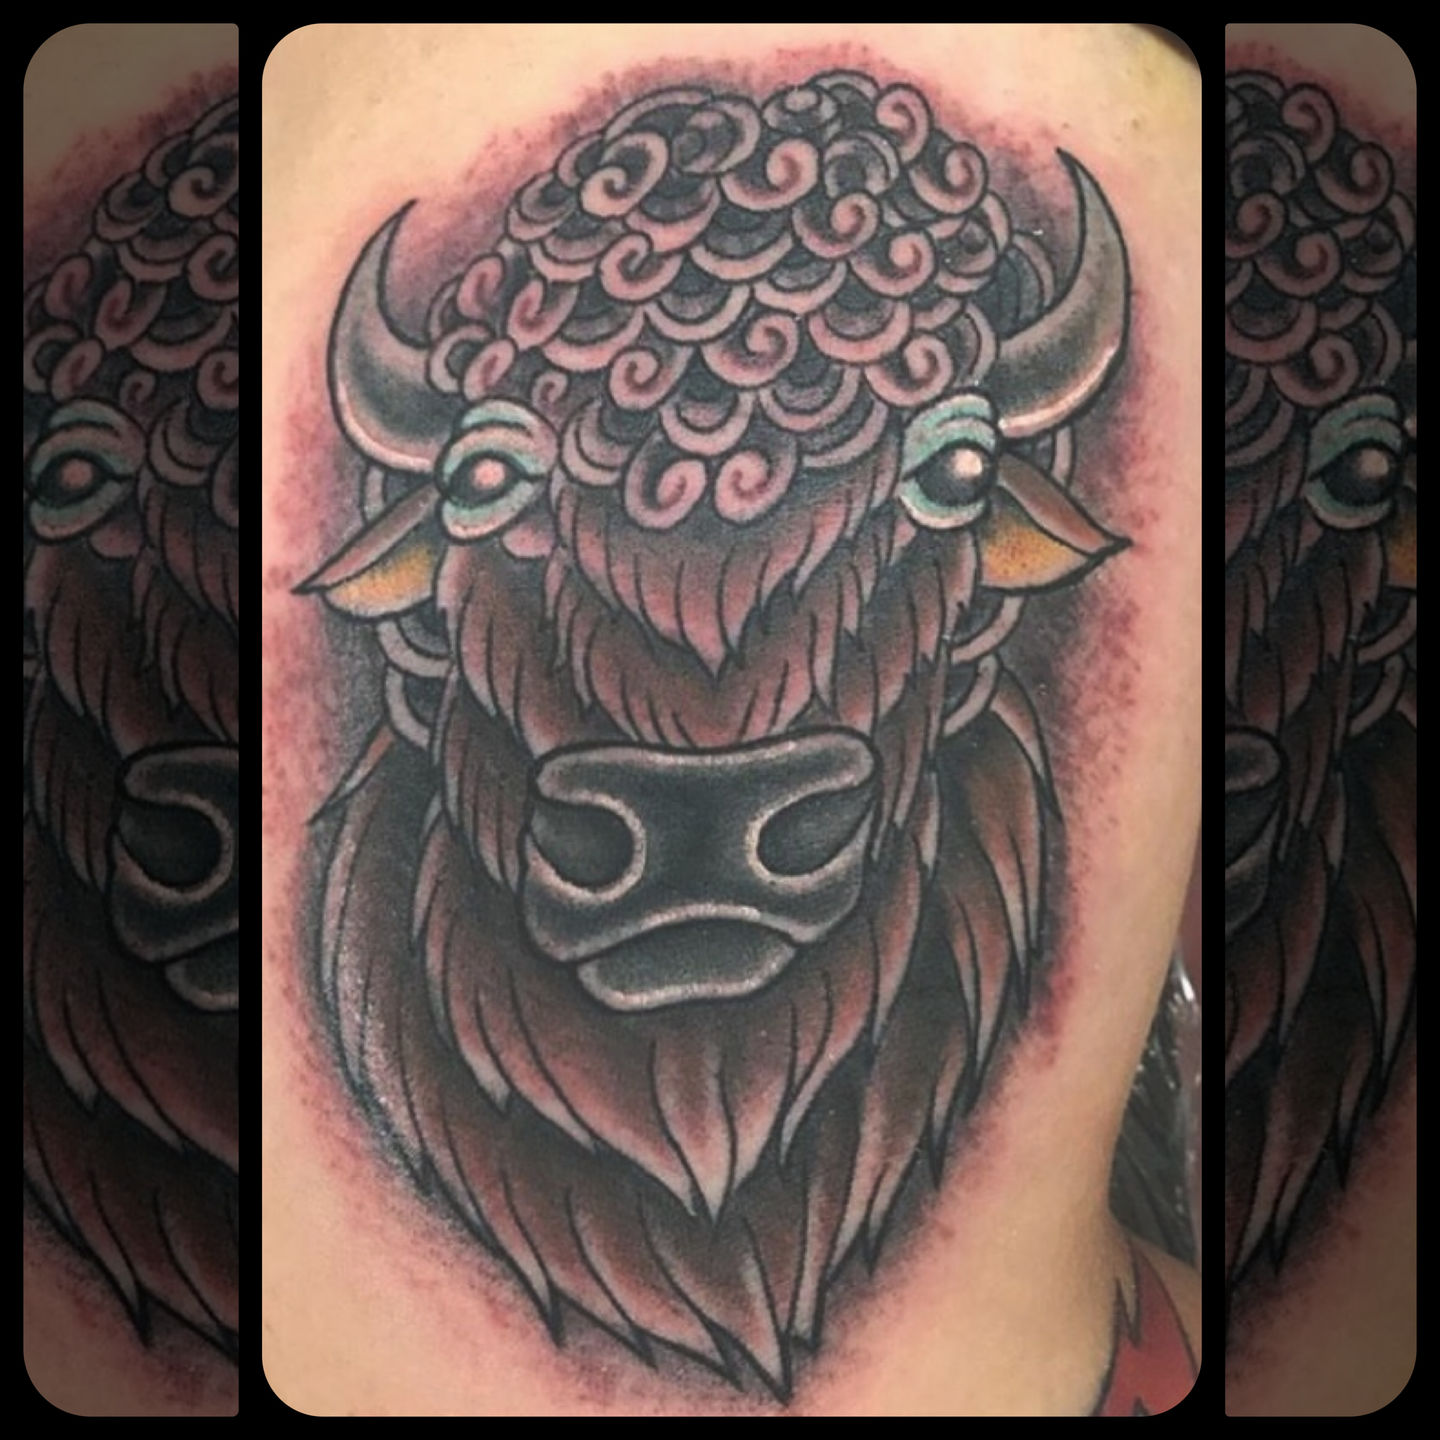 tiny buffalo tattoo done at Stygian Gallery in Atlanta GA  Buffalo tattoo  Inspirational tattoos Tattoos